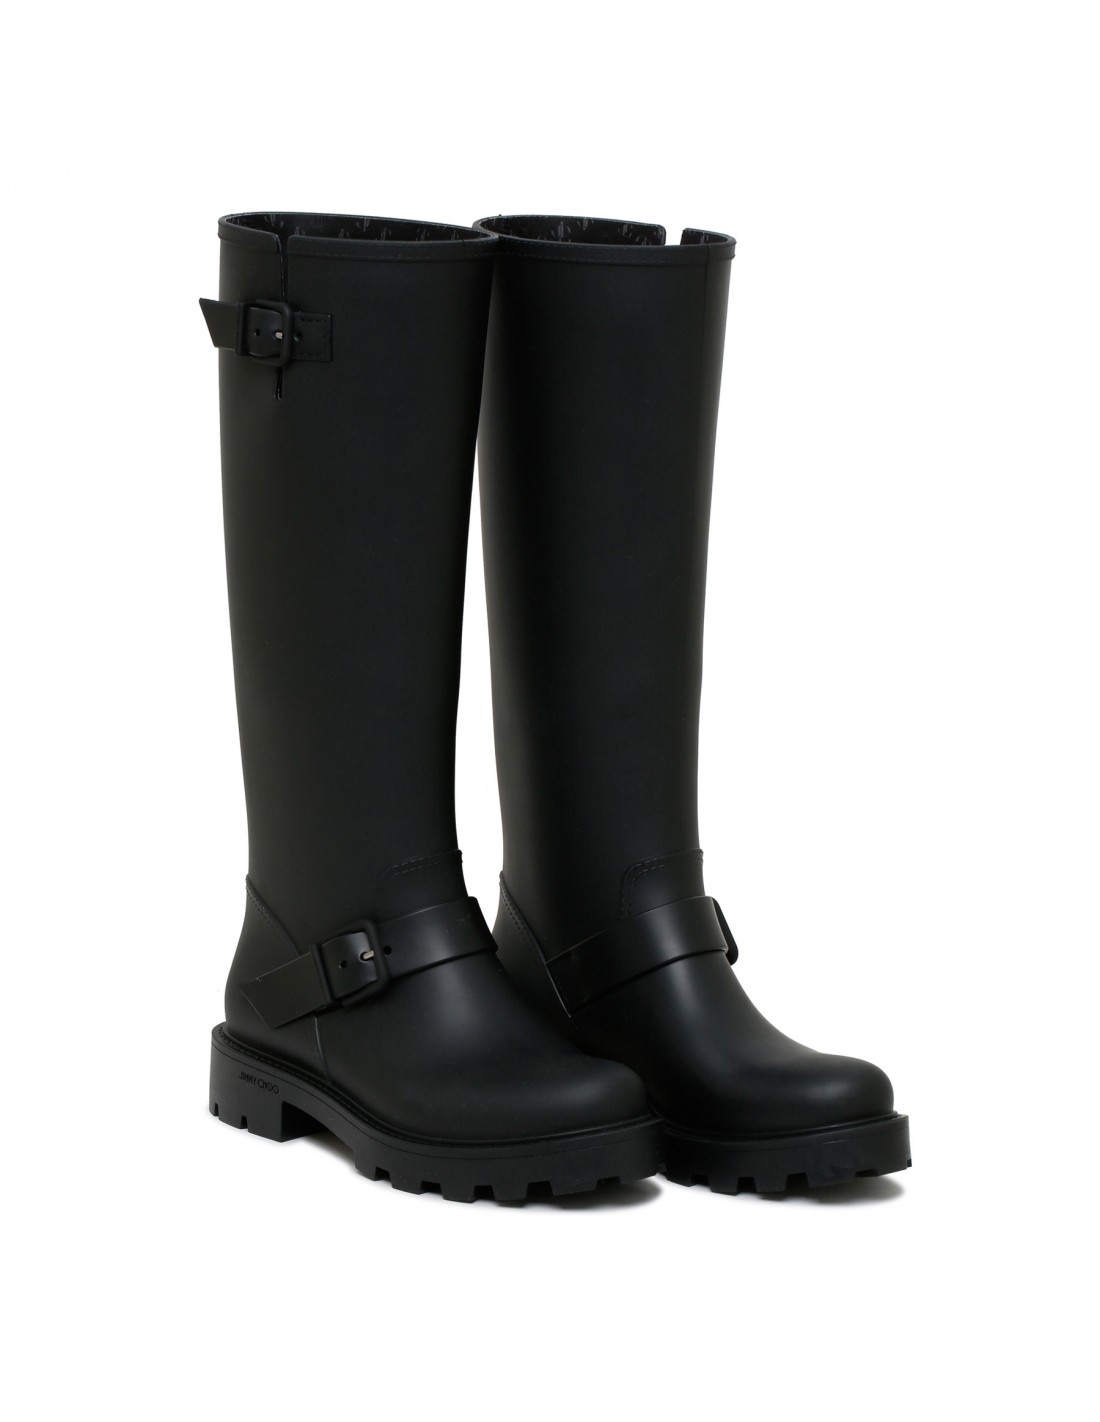 Yael flat tall black rain boots